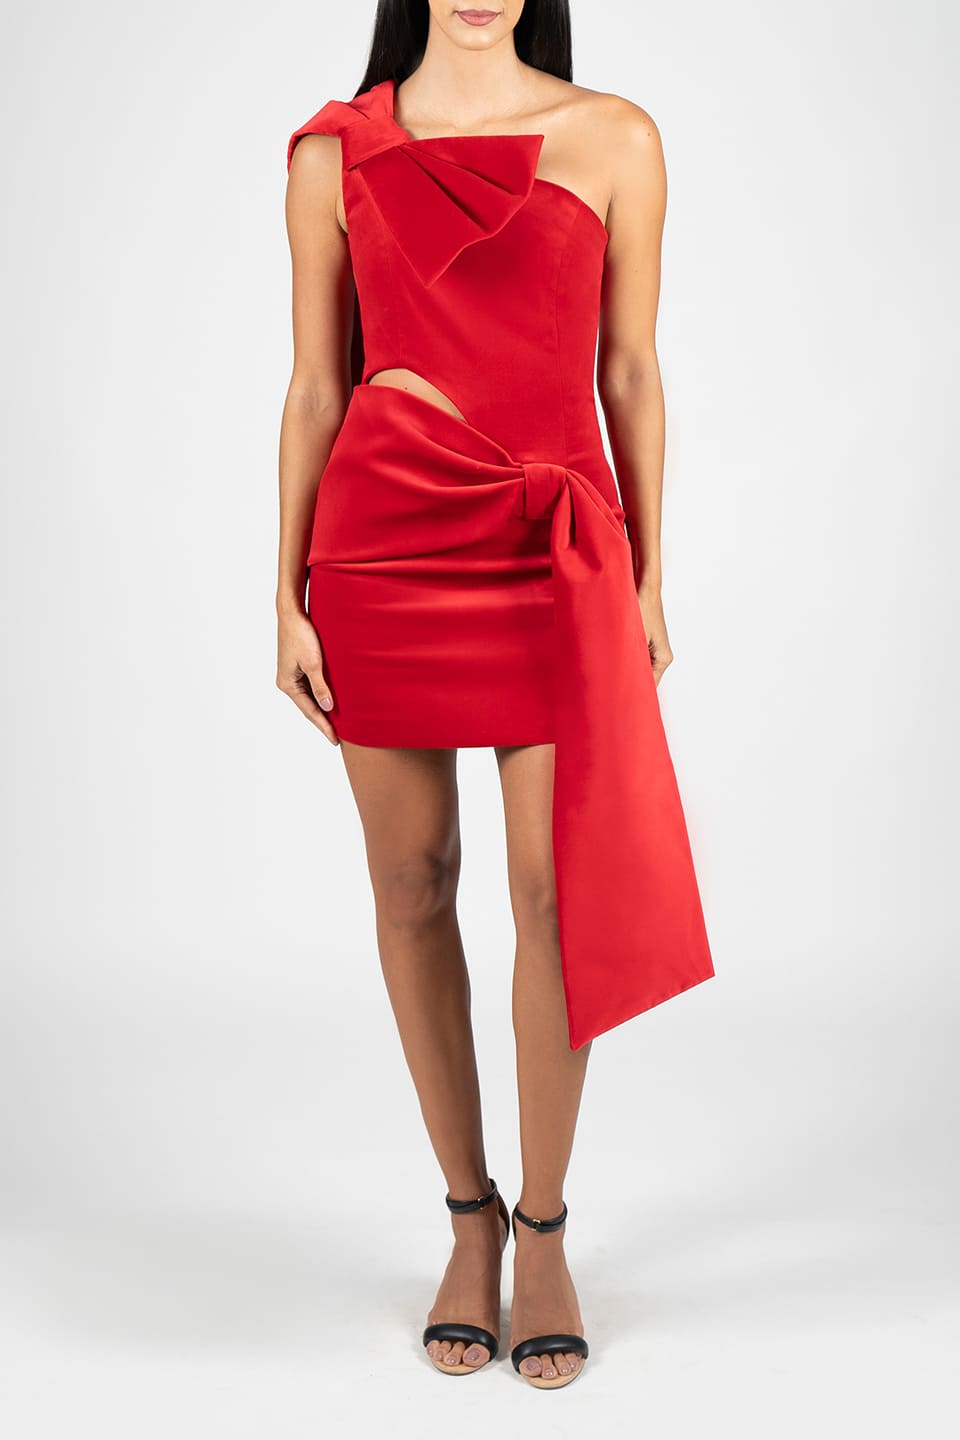 Thumbnail for Product gallery 3, Red Velvet Bow Mini Dress